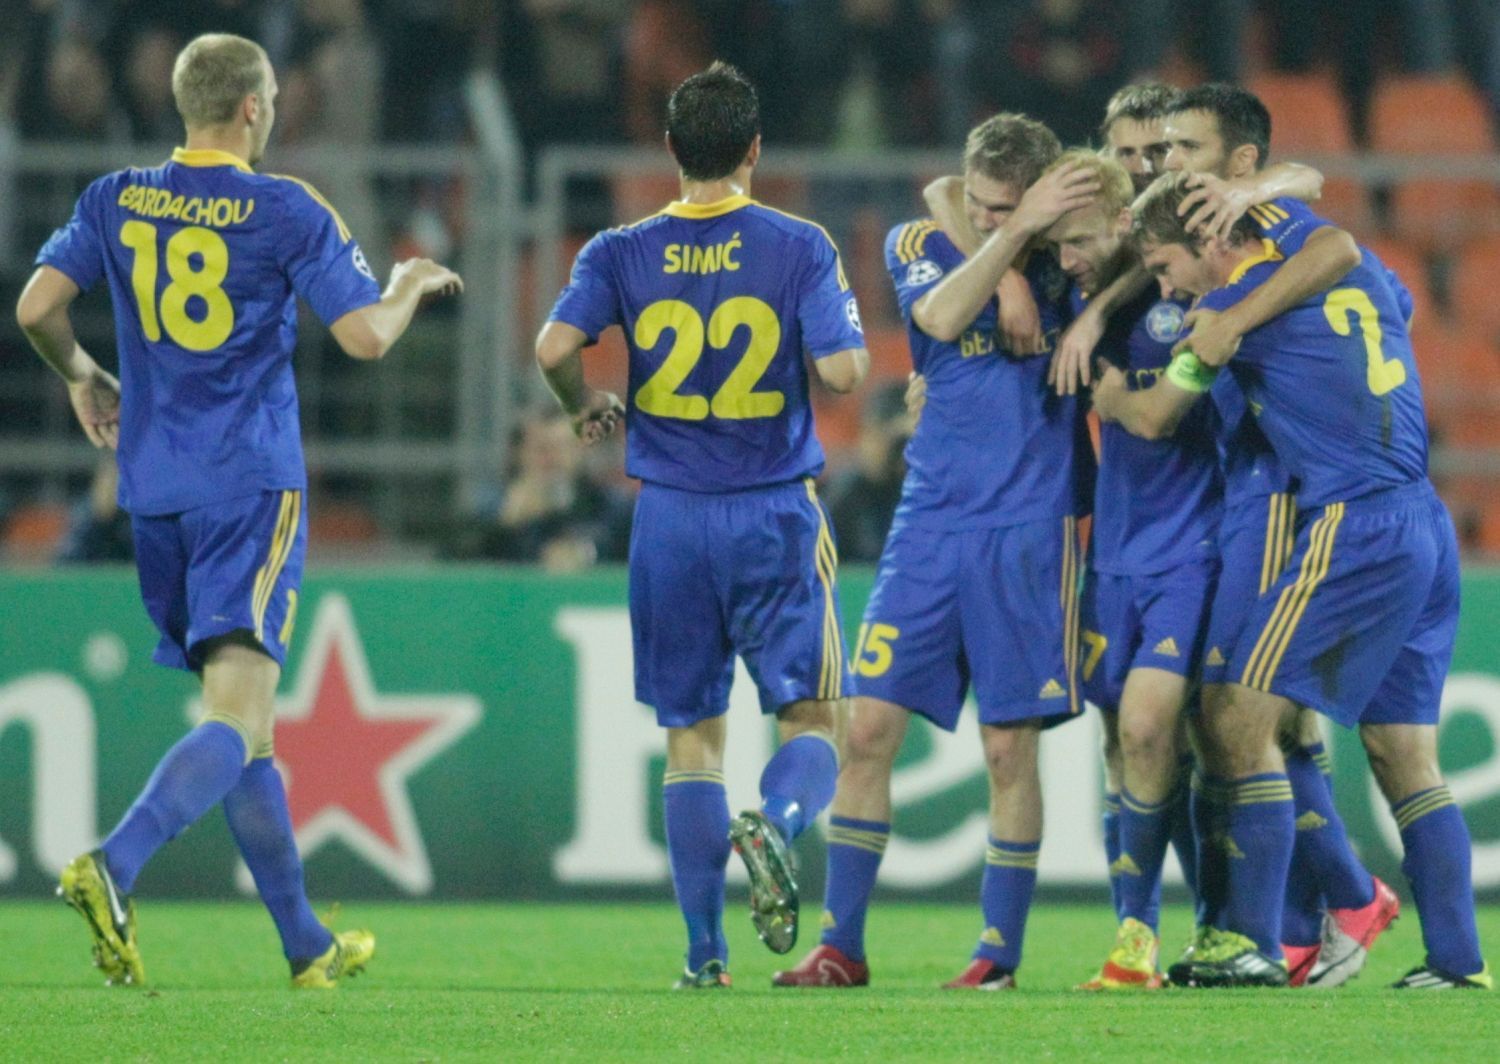 Fotbalisté BATE Borisova slaví gól v utkání Ligy mistrů 2012/13 proti Bayernu Mnichov.